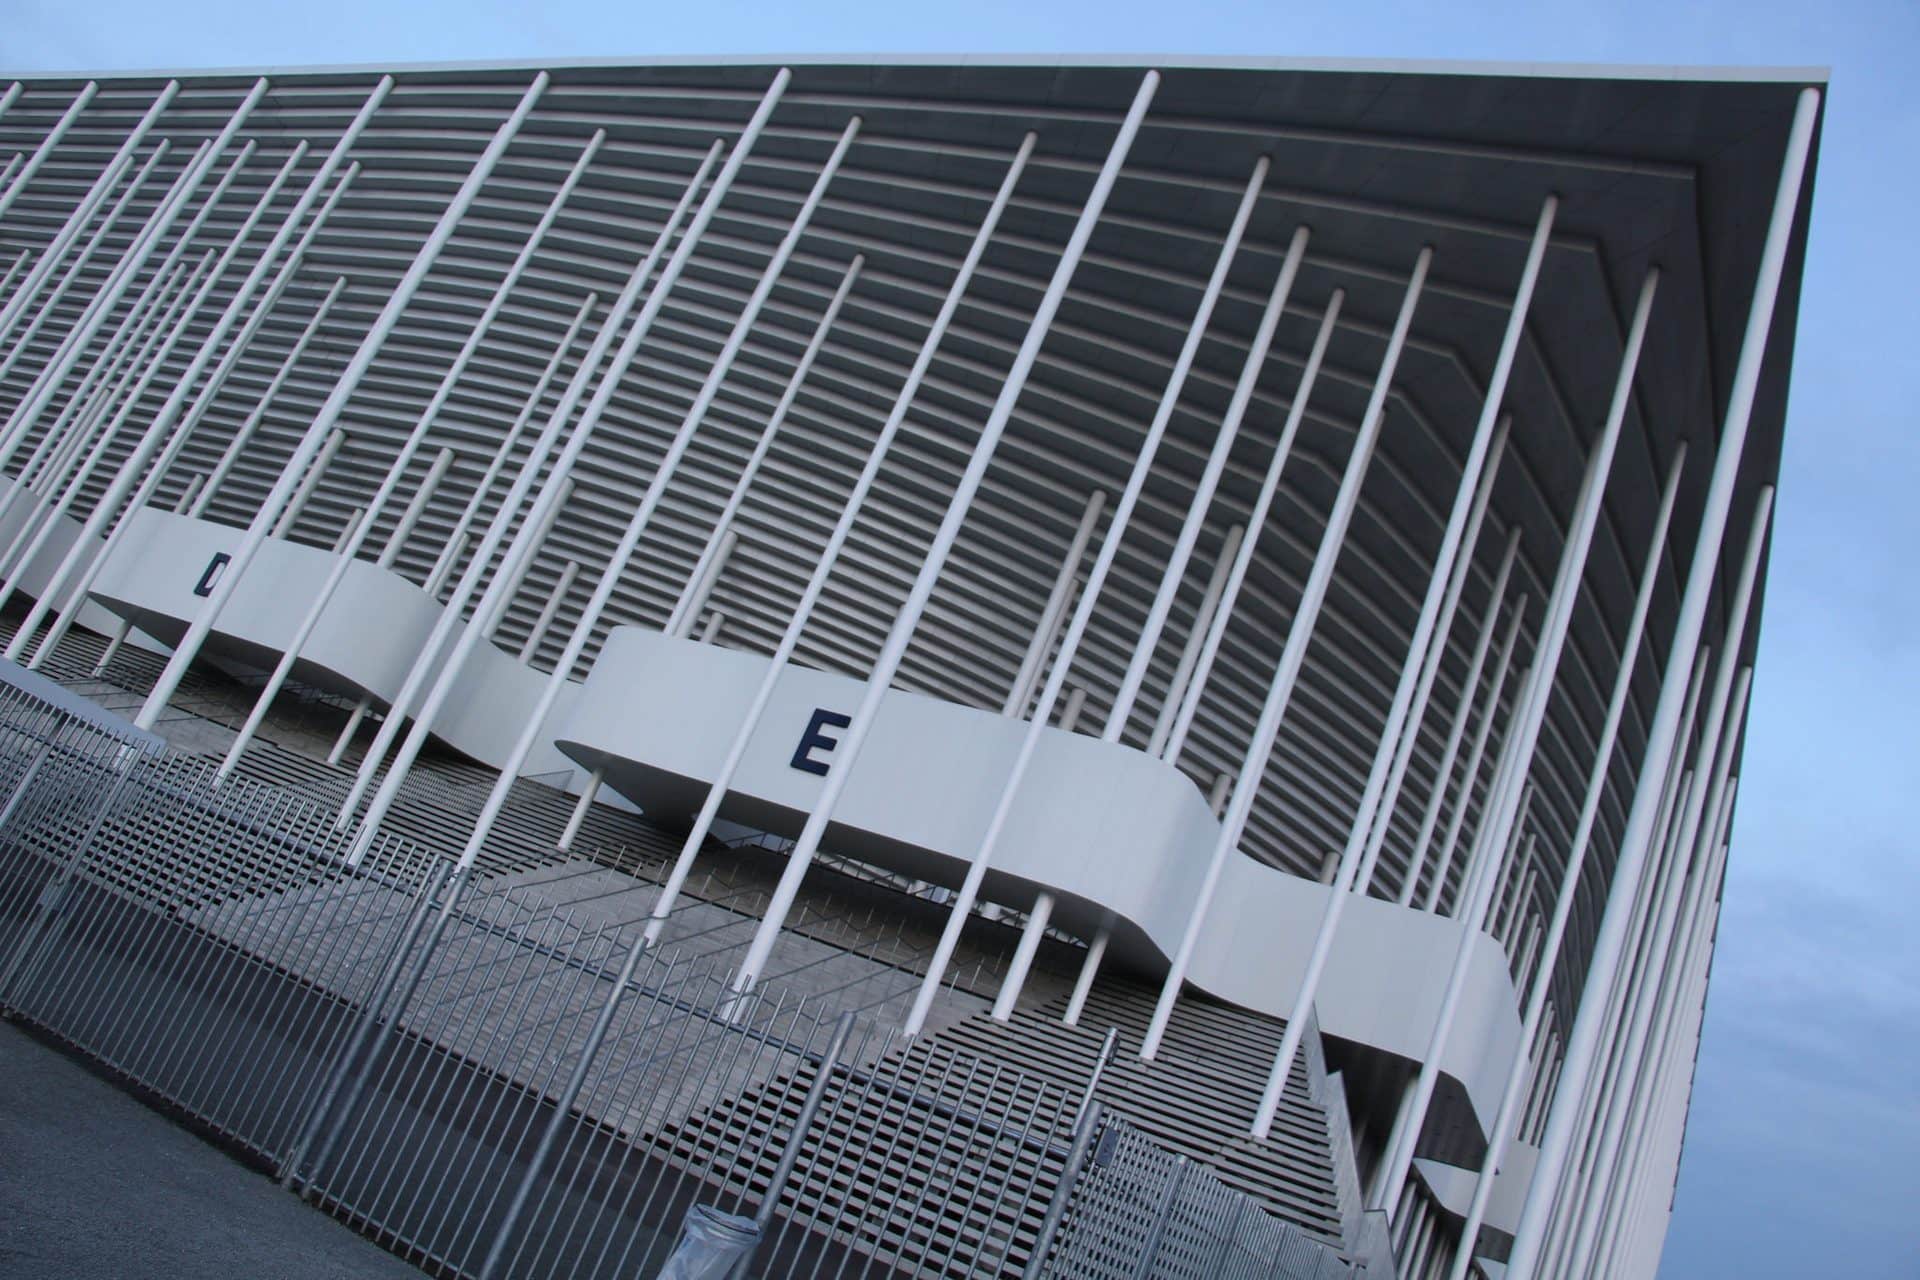 Le grand stade de Bordeaux au scanner de la Cour des Comptes